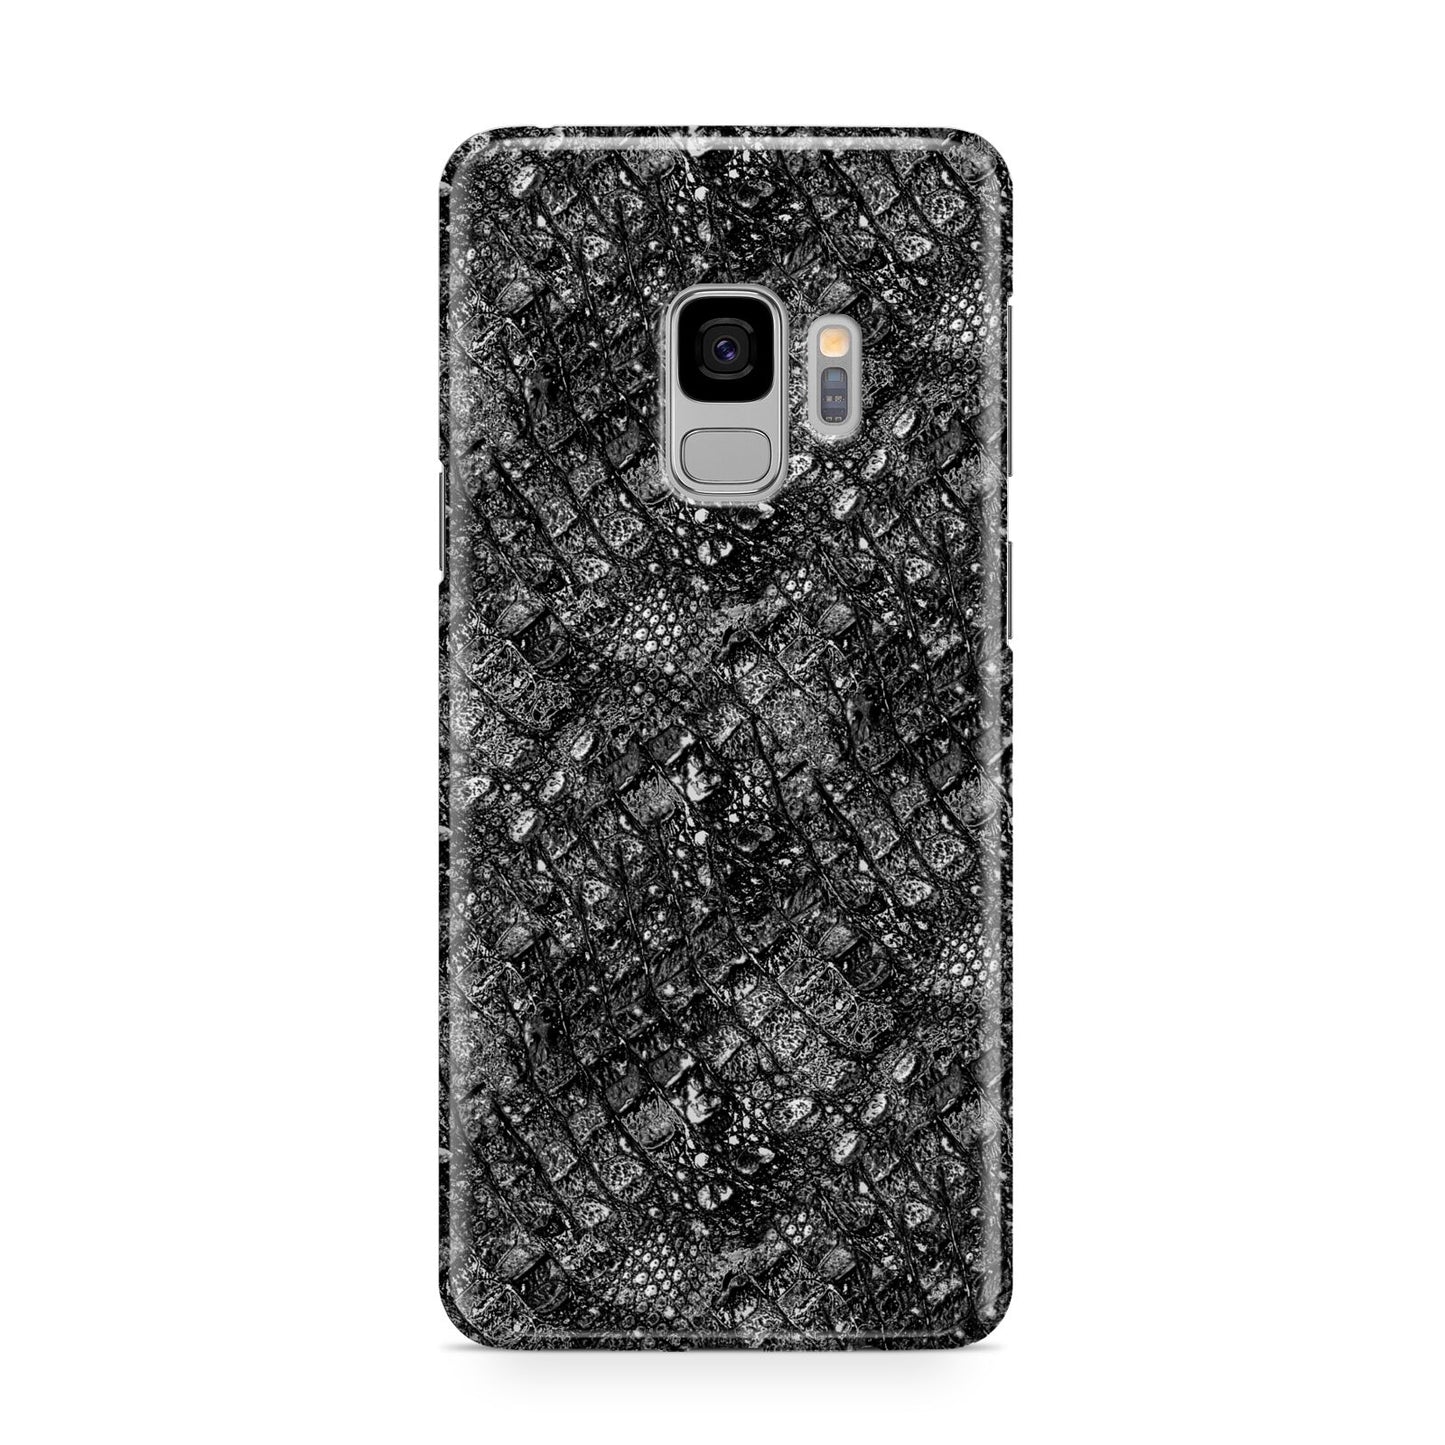 Snakeskin Design Samsung Galaxy S9 Case